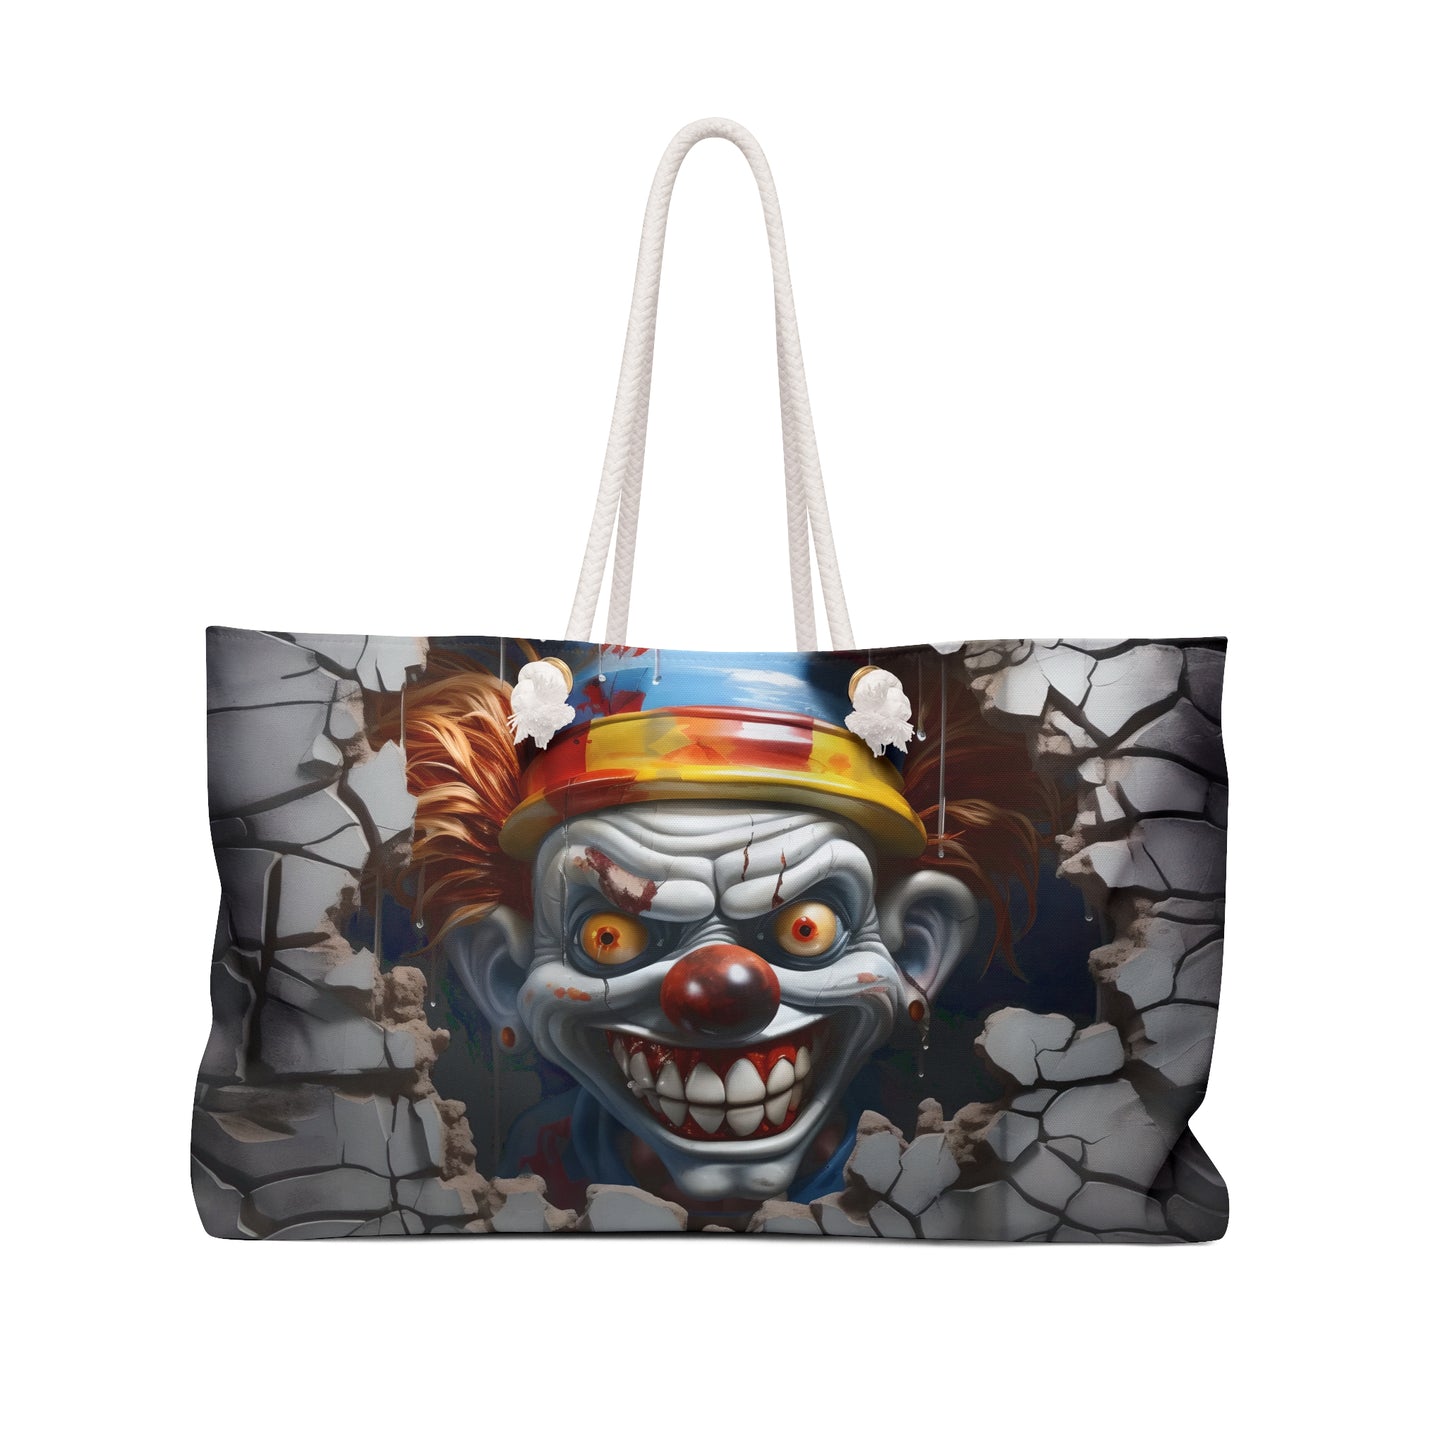 Scary Clown Weekender Bag